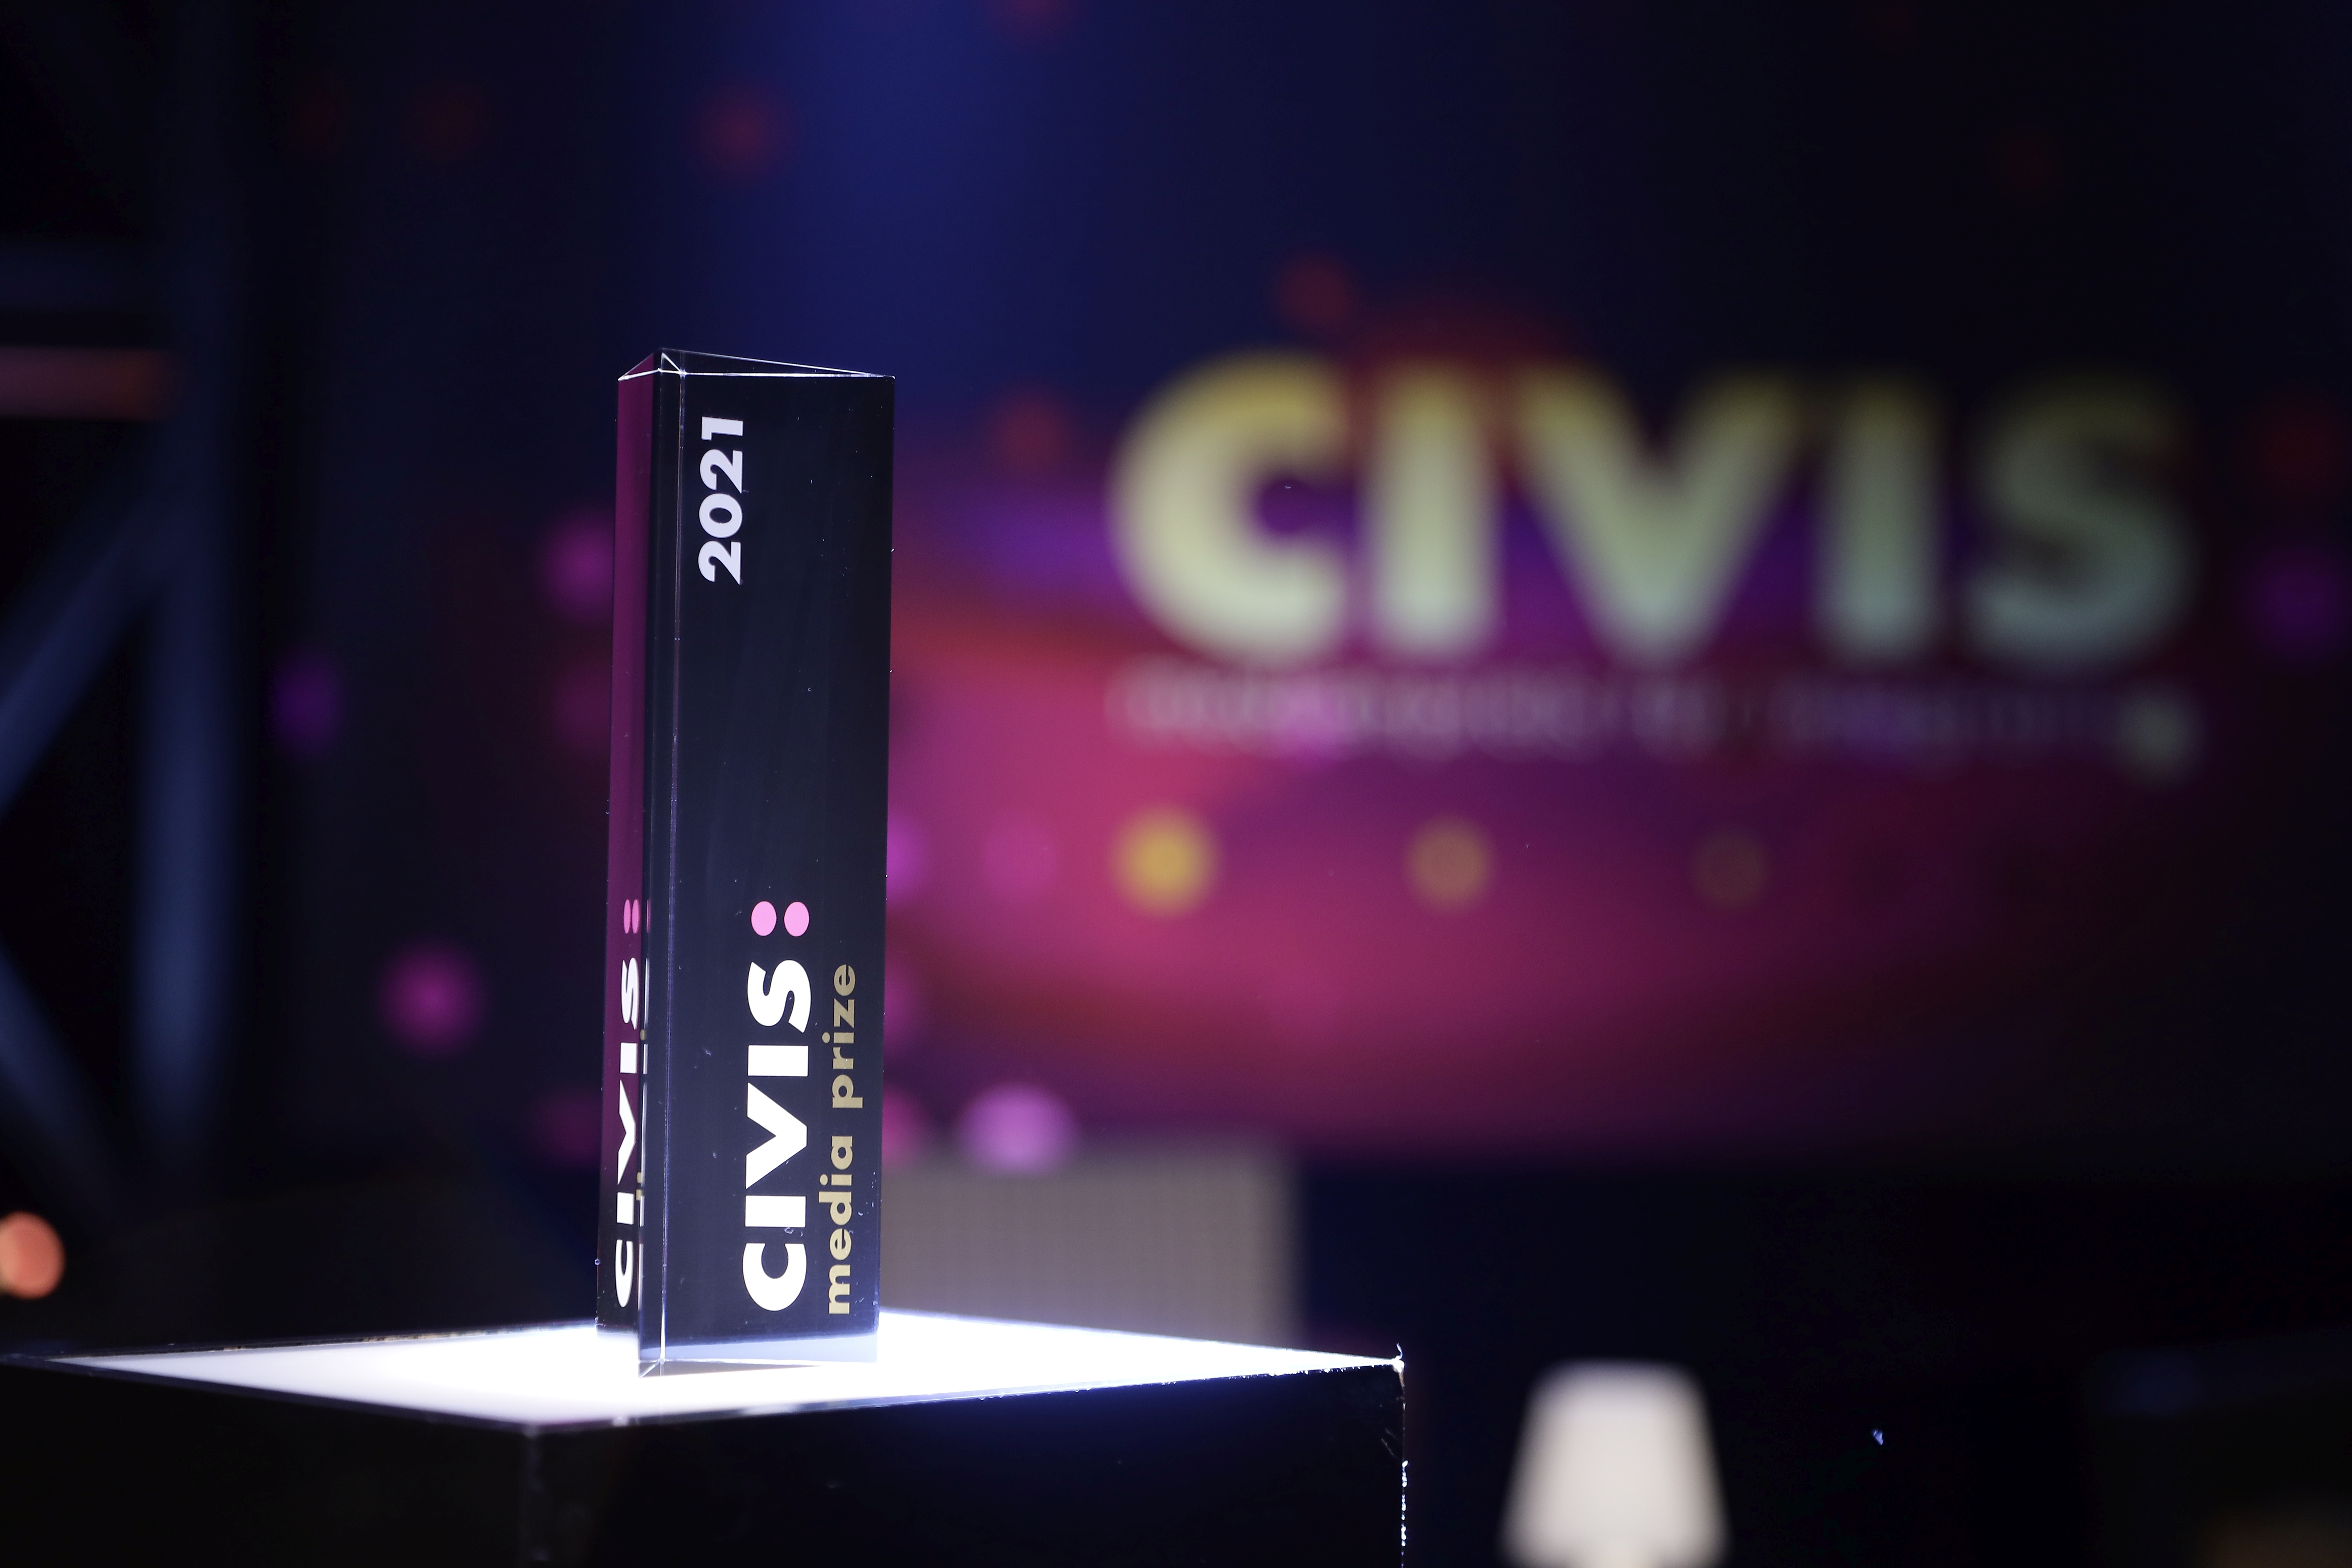 CIVIS – Europas Medienpreis für Migration, Integration und kulturelle Vielfalt zeichnet Programmleistungen aus, die das friedliche Zusammenleben in der europäischen Einwanderungsgesellschaft fördern.